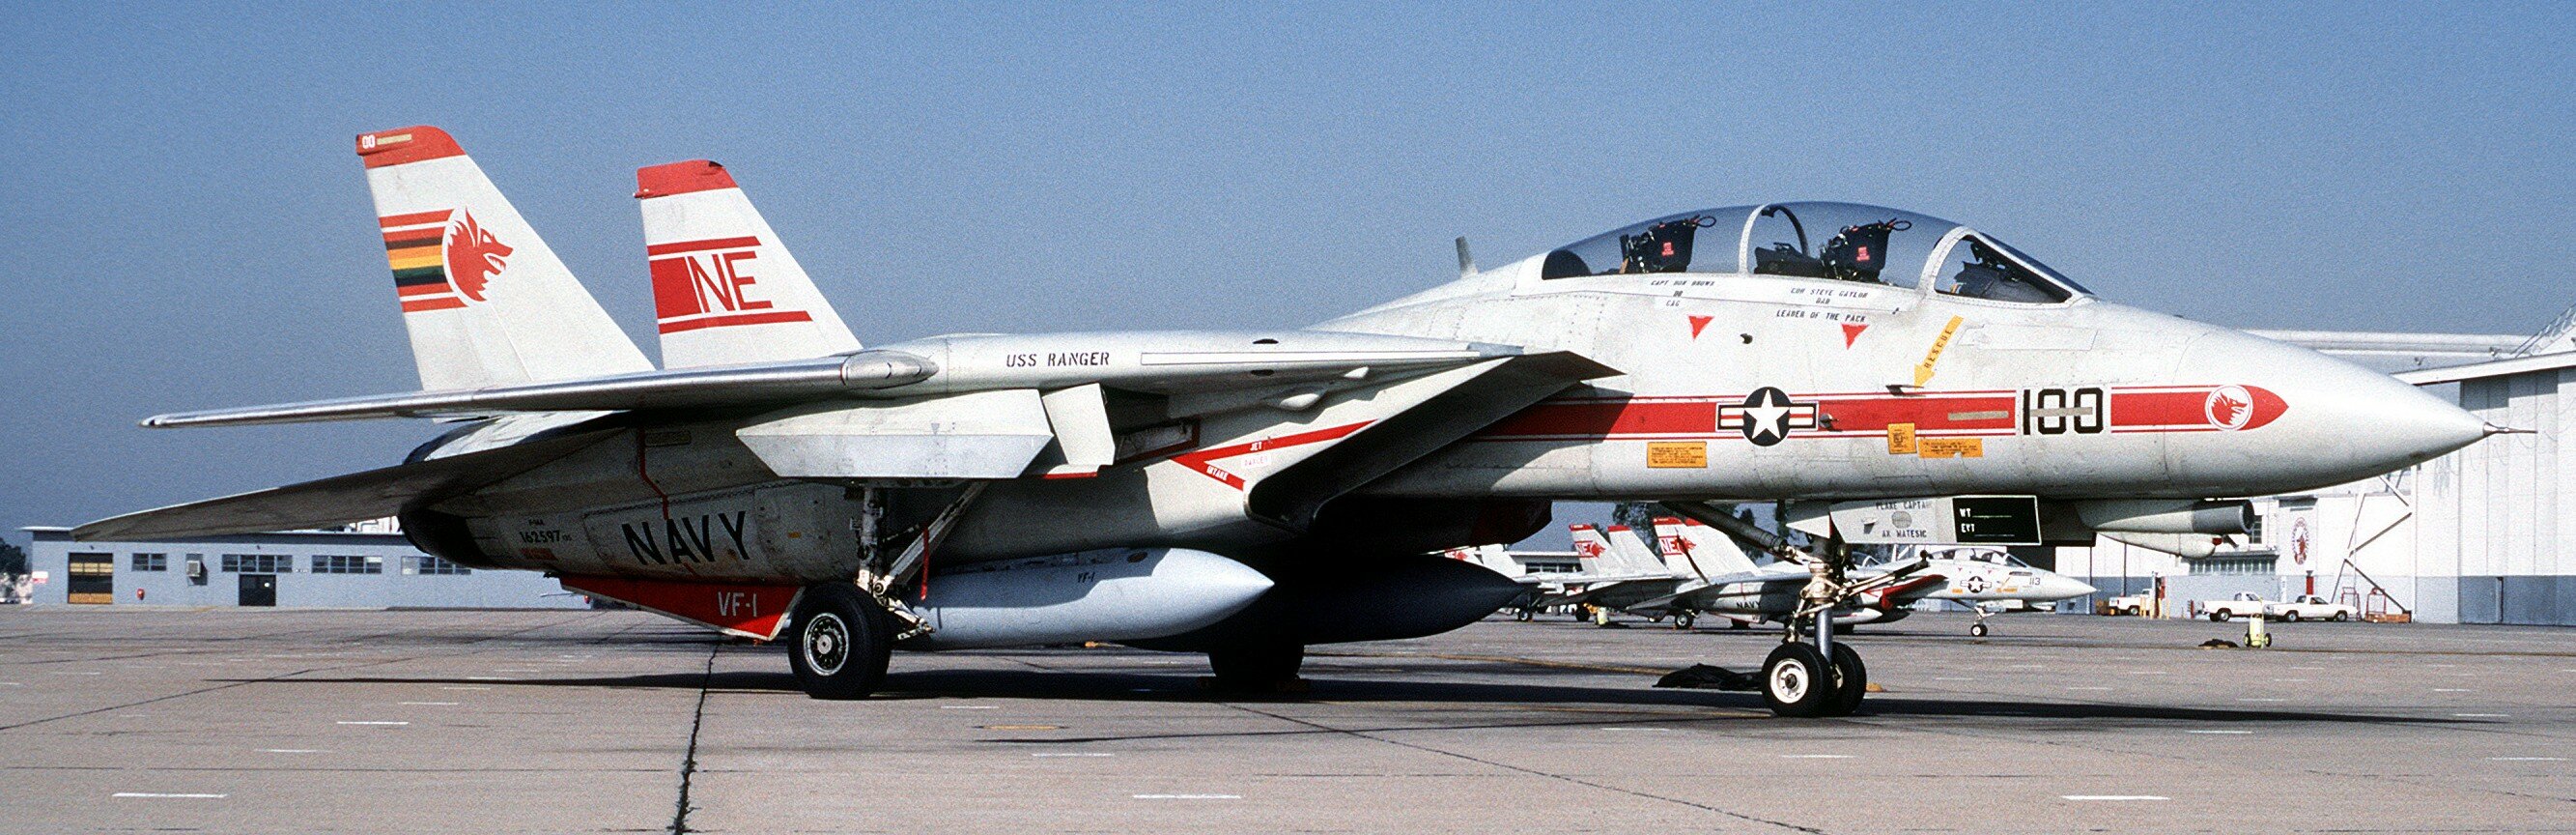 VF-1-Wolfpack-059.jpg